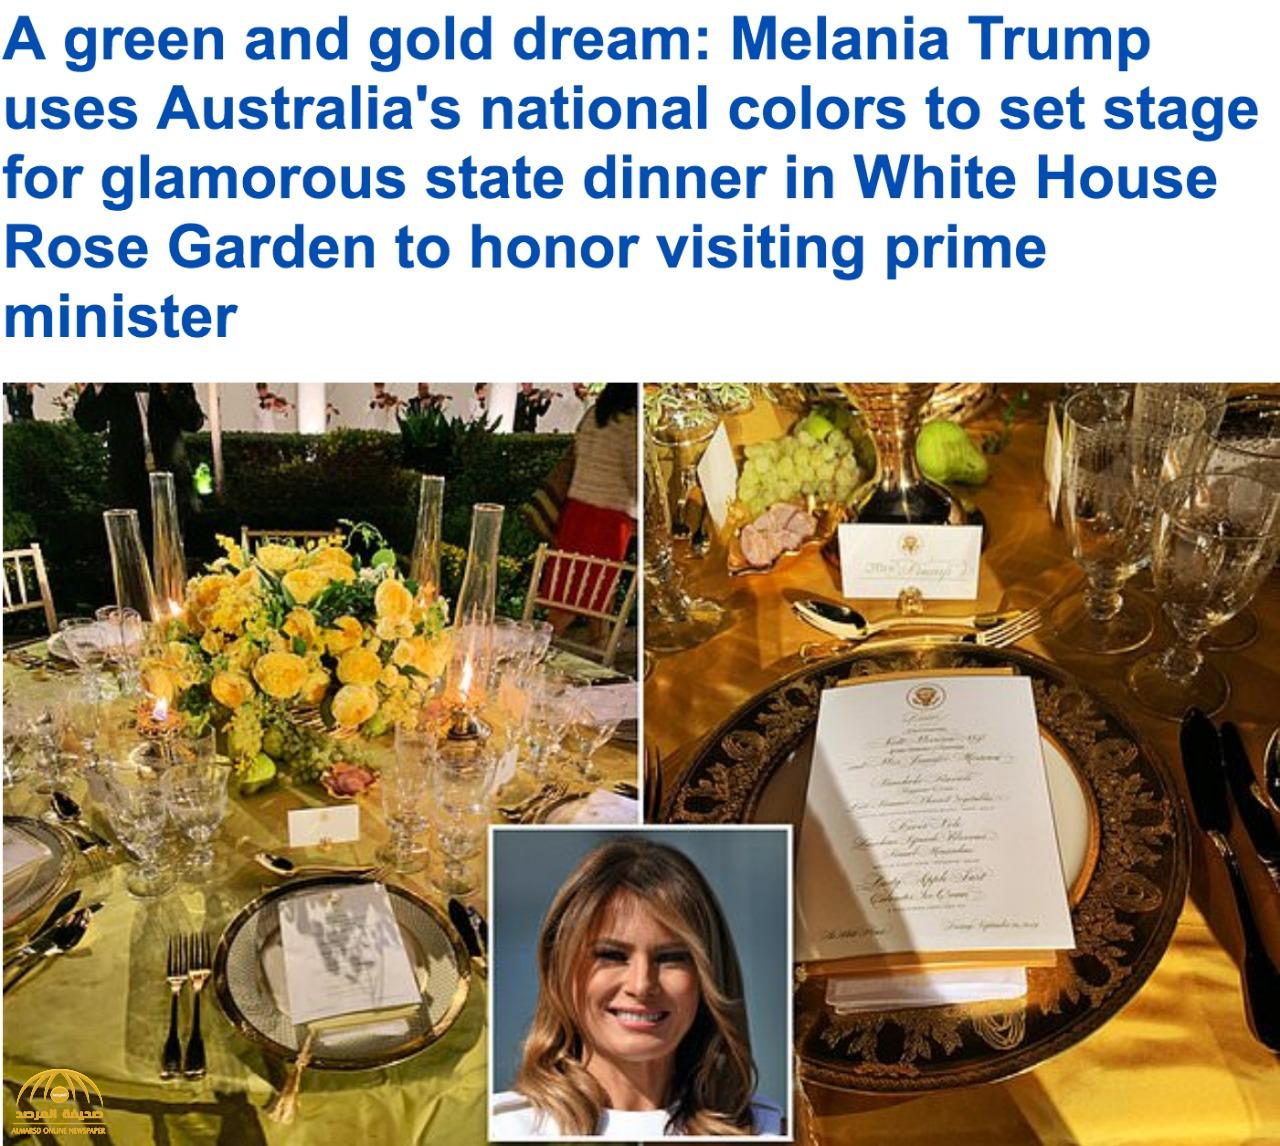 شاهد : كيف أعدت ميلانيا ترامب حديقة البيت الأبيض لـ "وجبة العشاء" في استقبال رئيس الوزراء الاسترالي وزوجته!